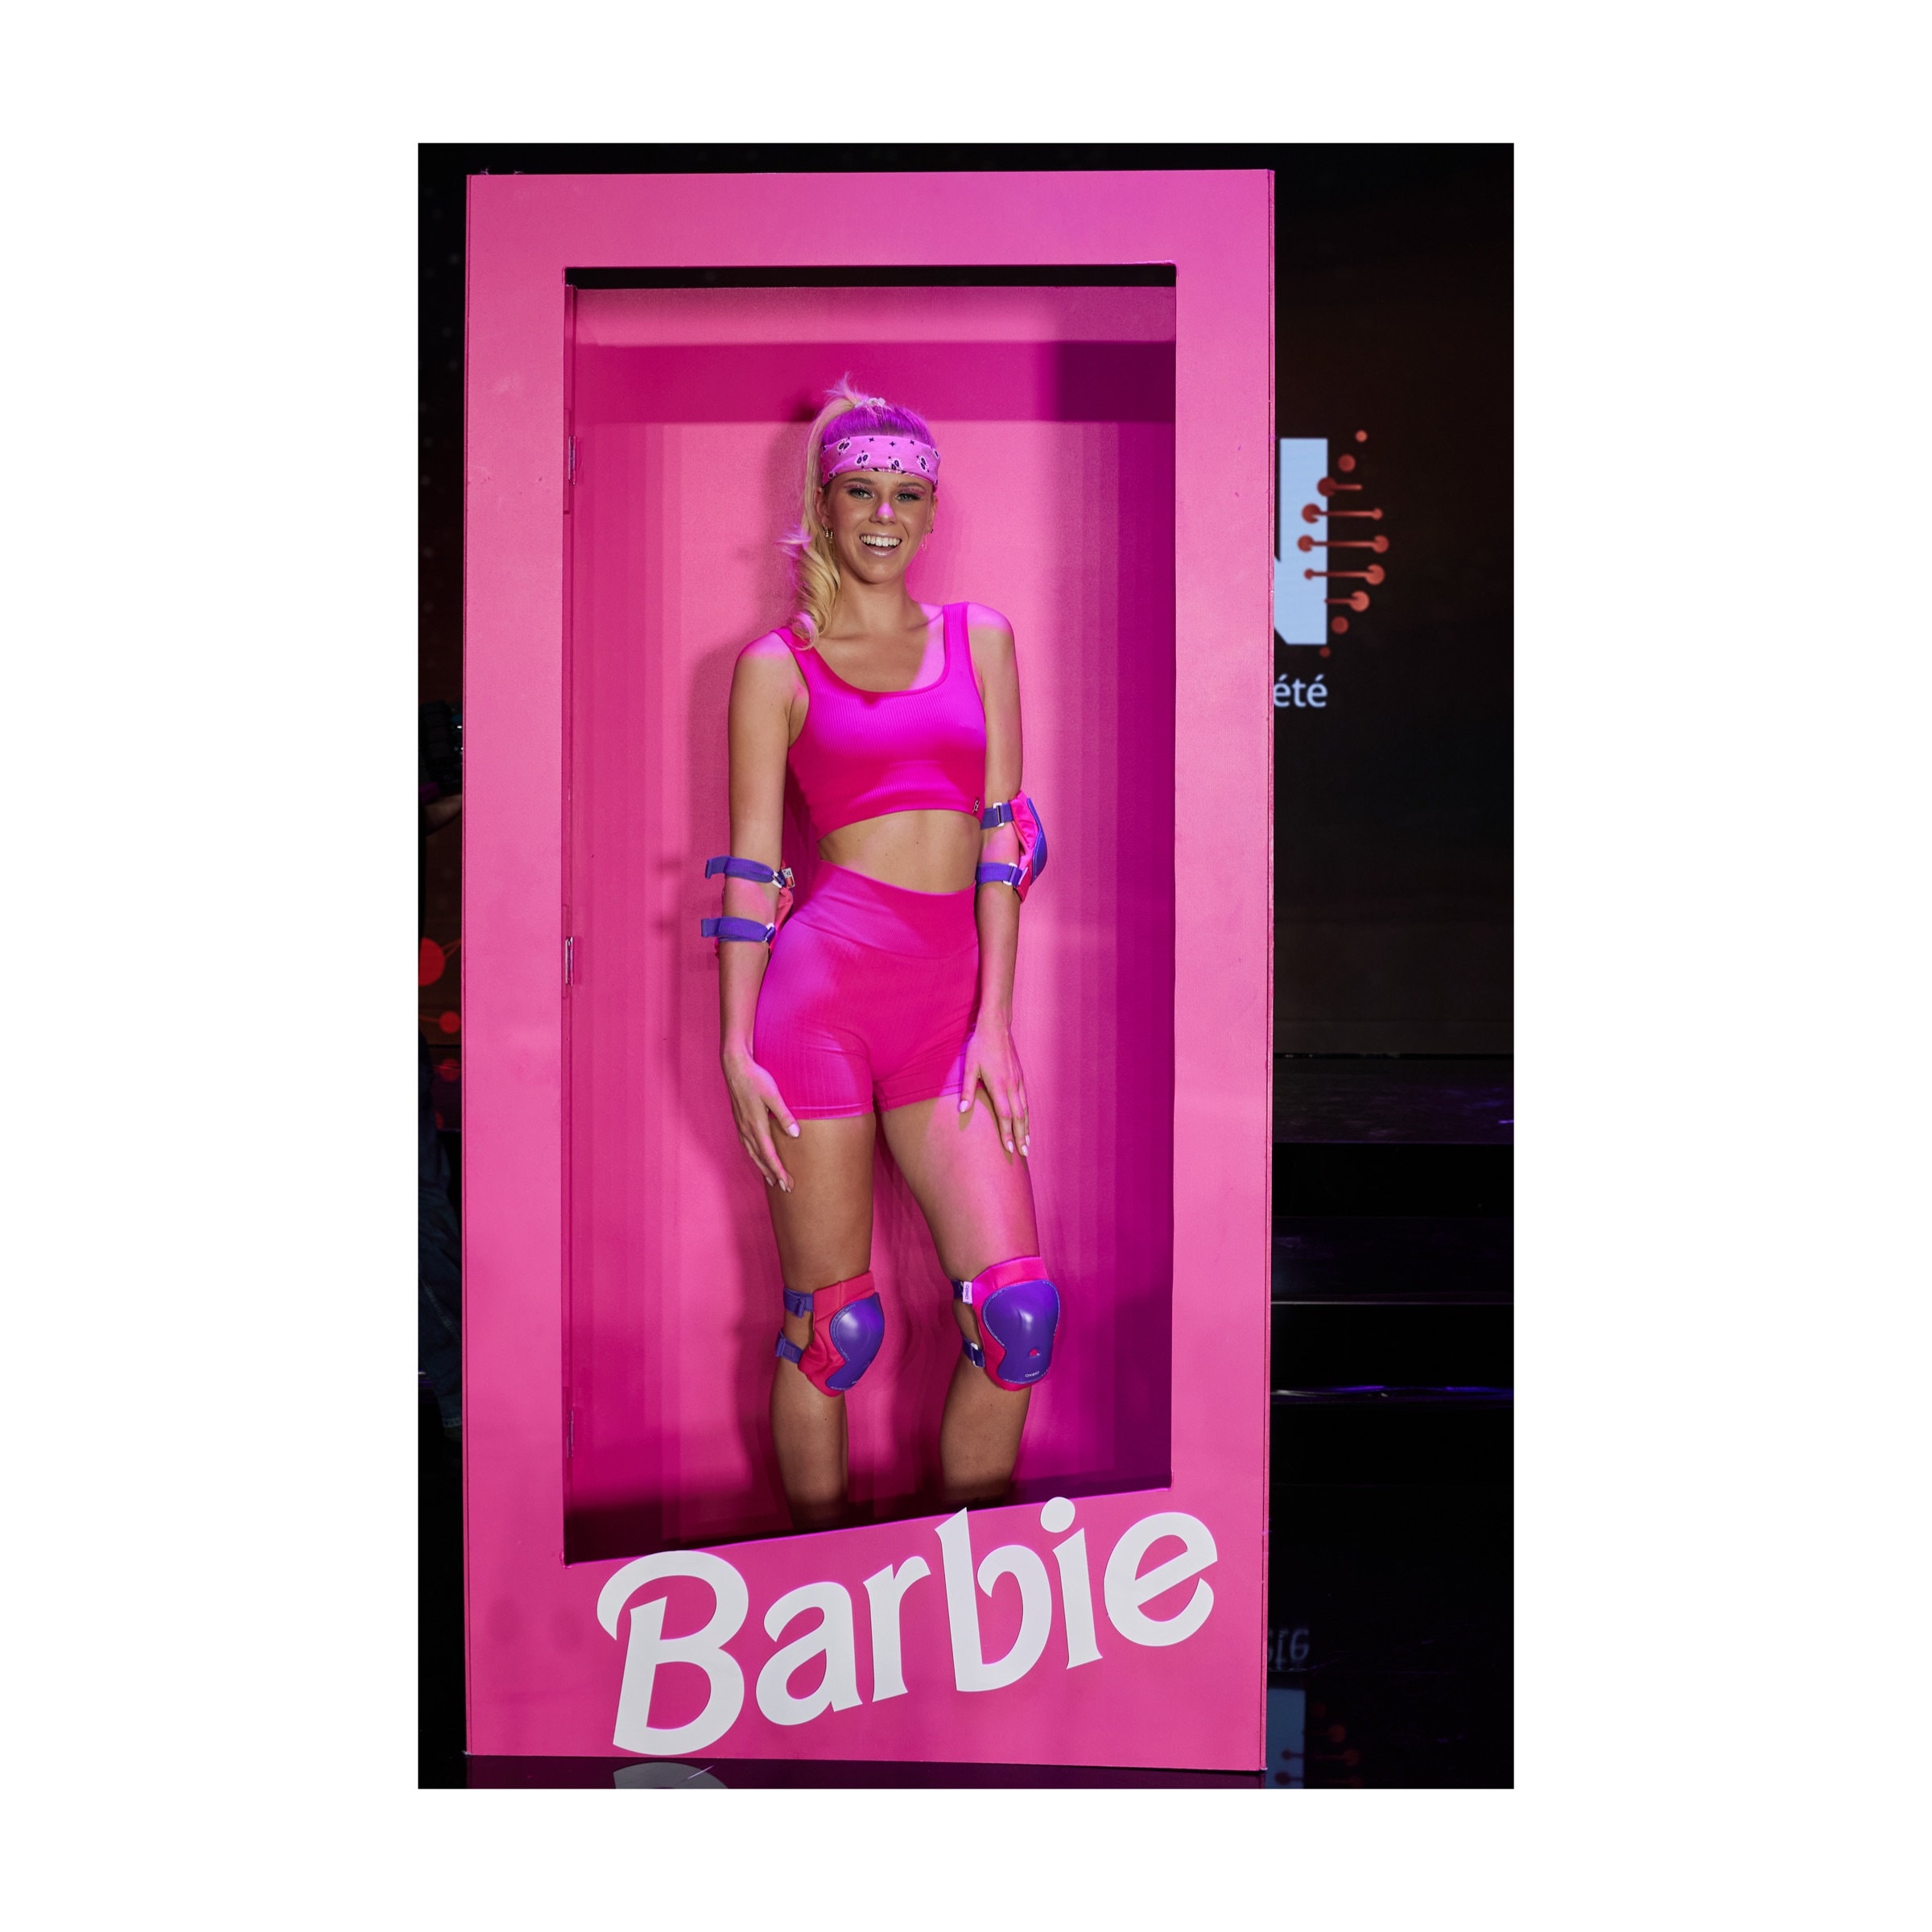 Ballon en aluminium en forme de cœur - 45 cm - Barbie Sweet Life